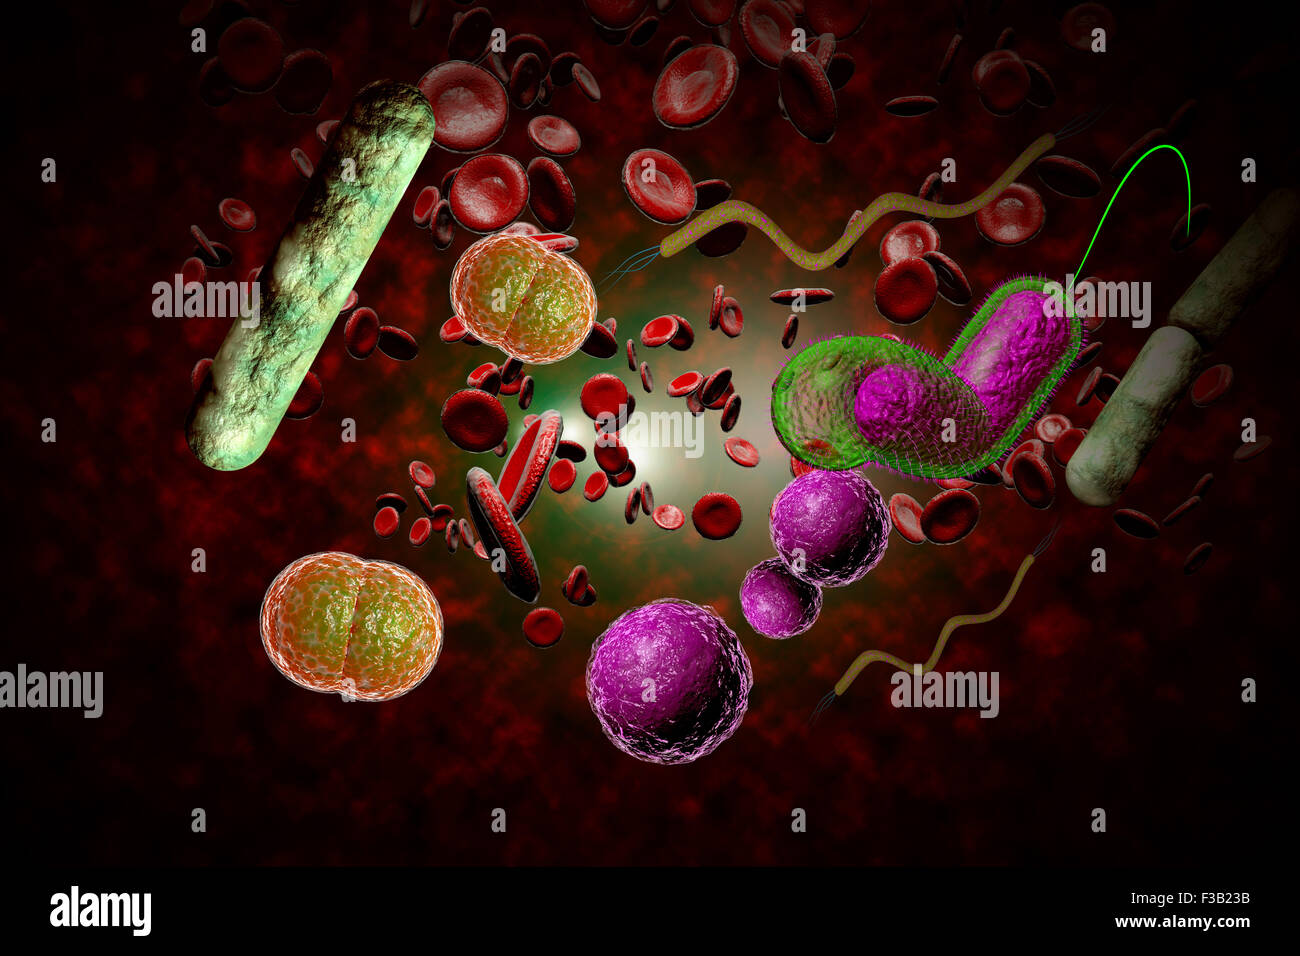 Микробы в крови